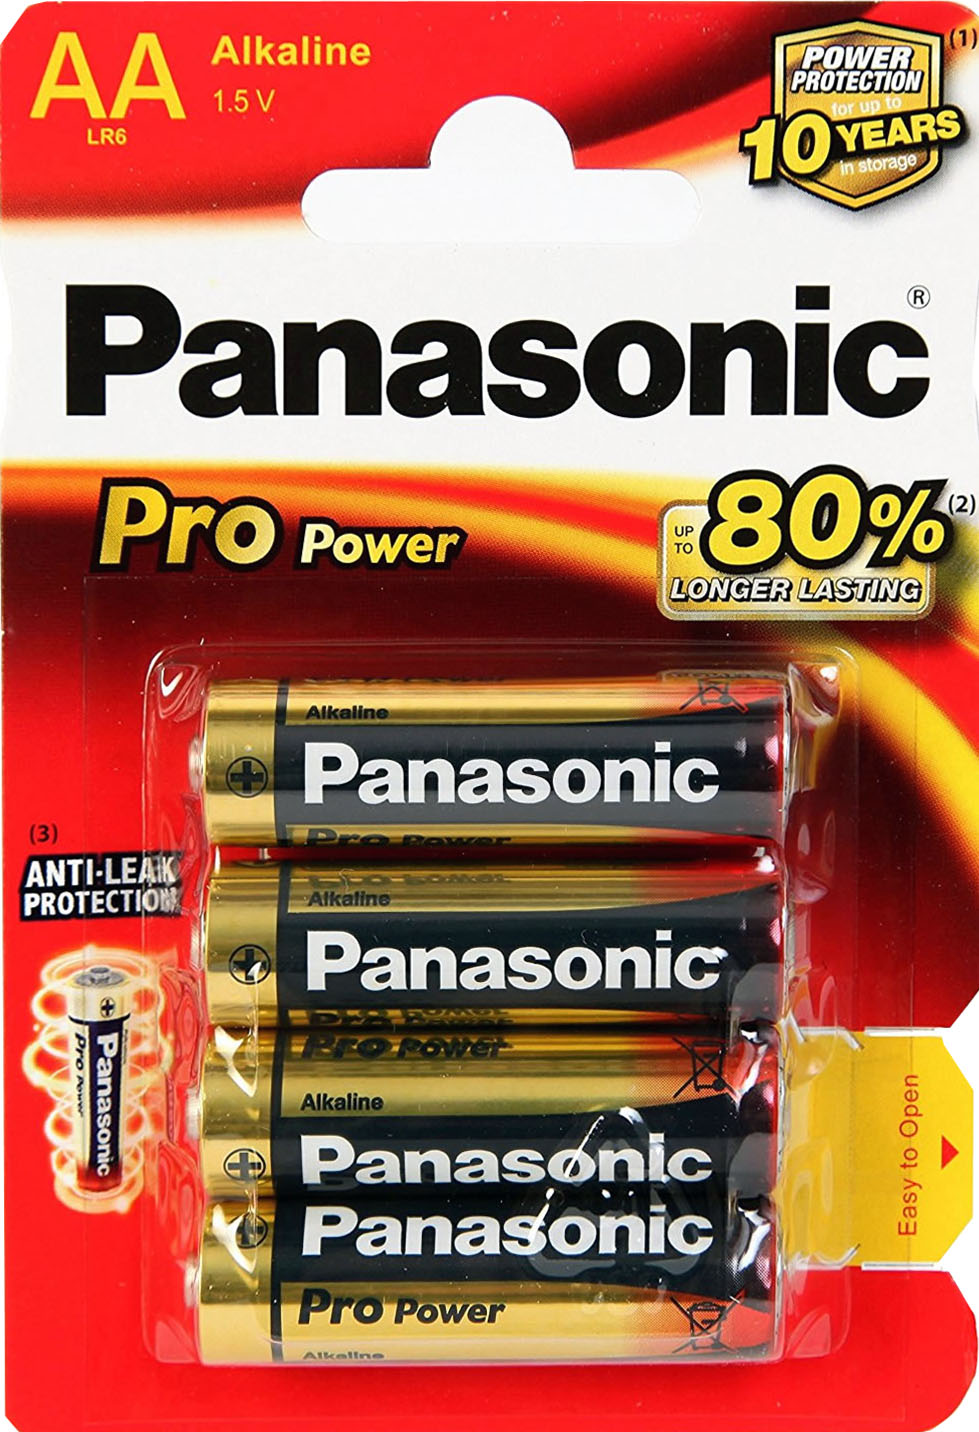 Die Pro Power ist die neueste und universellste Batterie in unserem Panasonic Alkali-Sortiment.